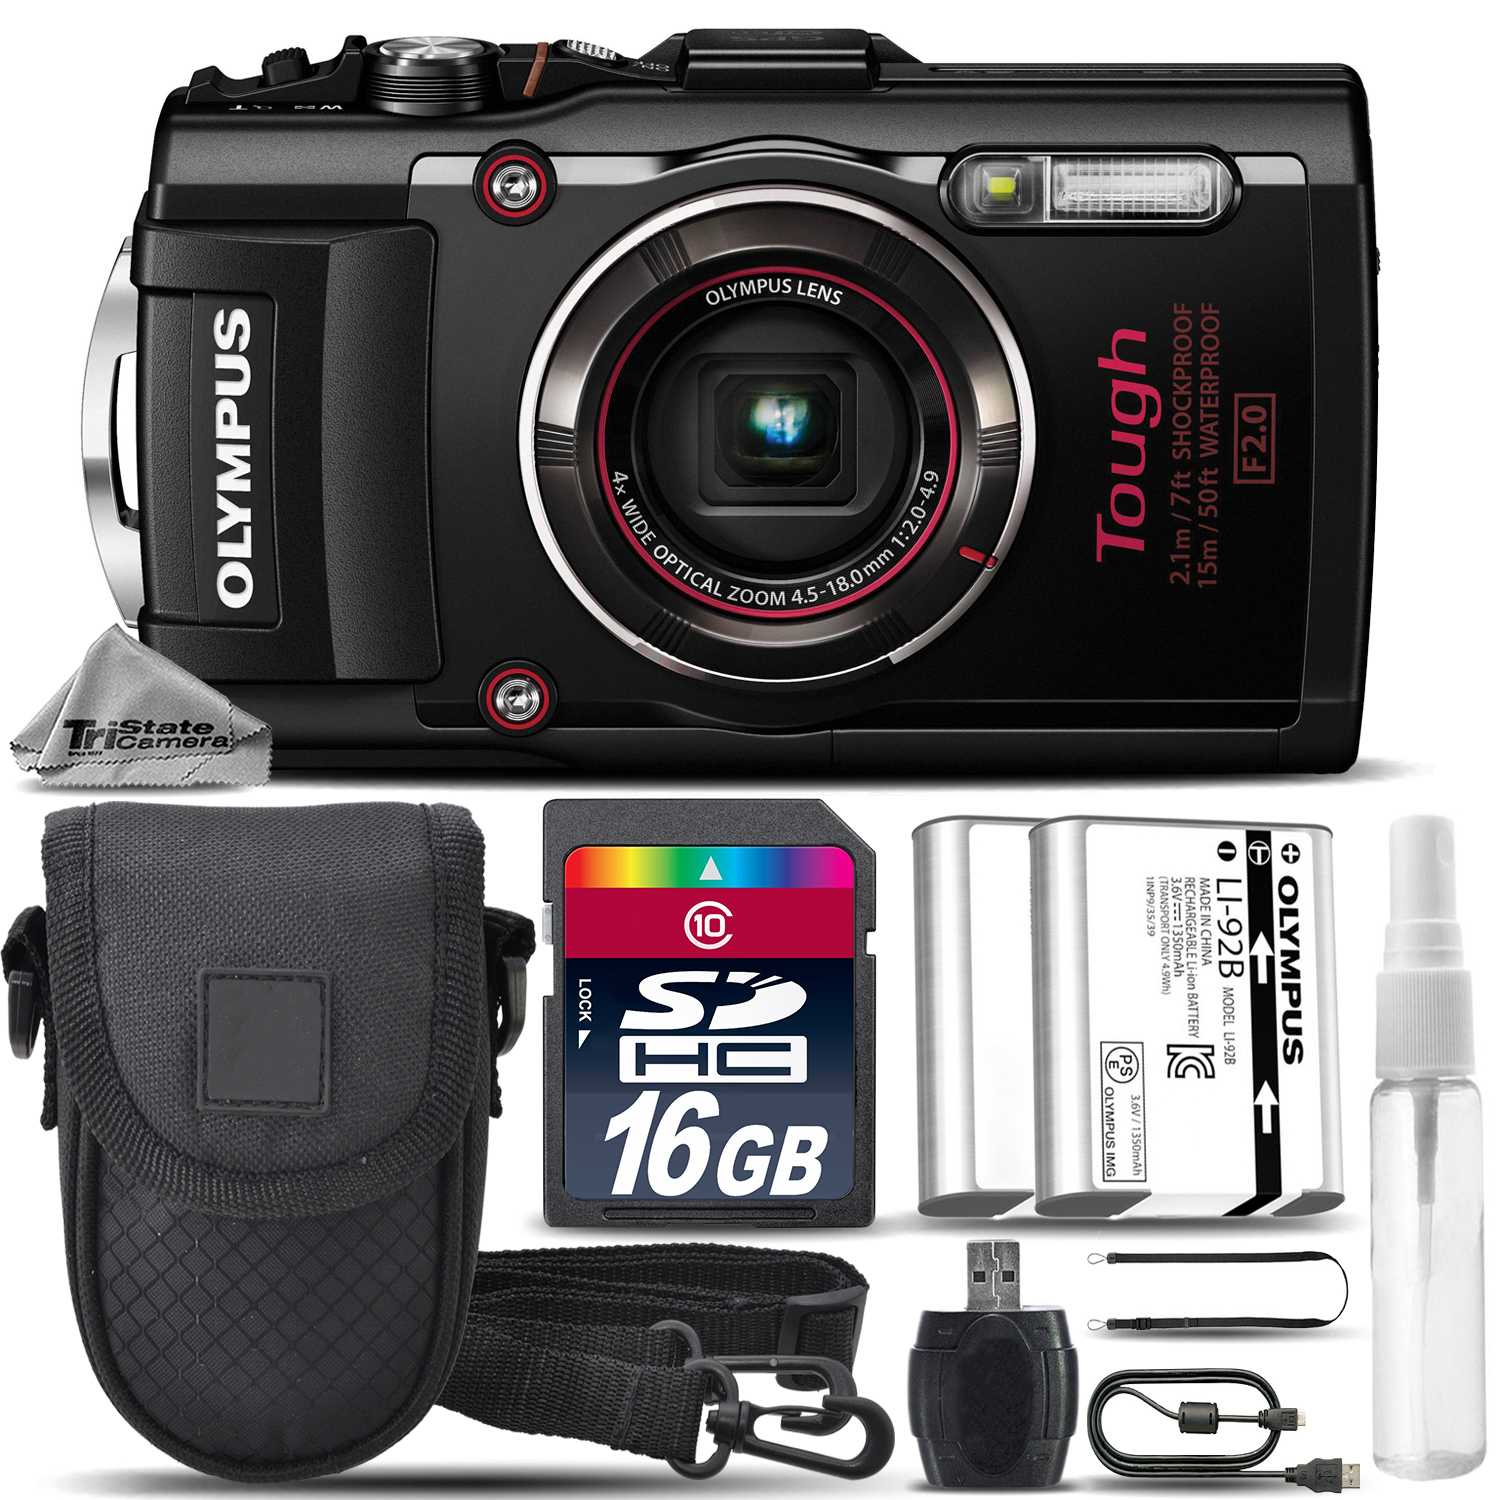 Olympus tough tg-630 (синий) - купить , скидки, цена, отзывы, обзор, характеристики - фотоаппараты цифровые